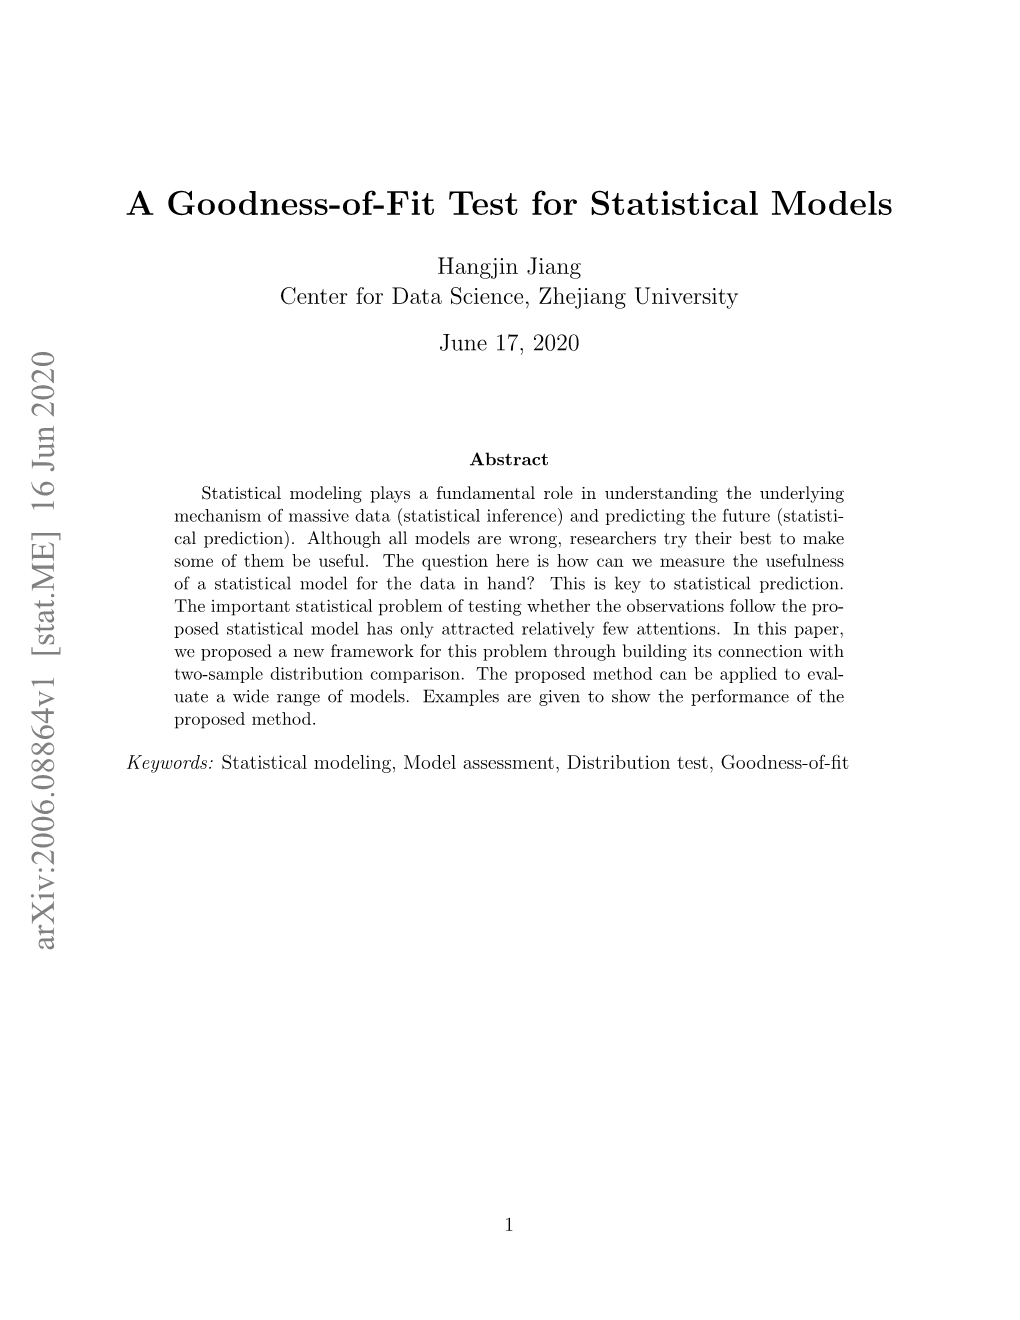 A Goodness-Of-Fit Test for Statistical Models Arxiv:2006.08864V1 [Stat.ME] 16 Jun 2020